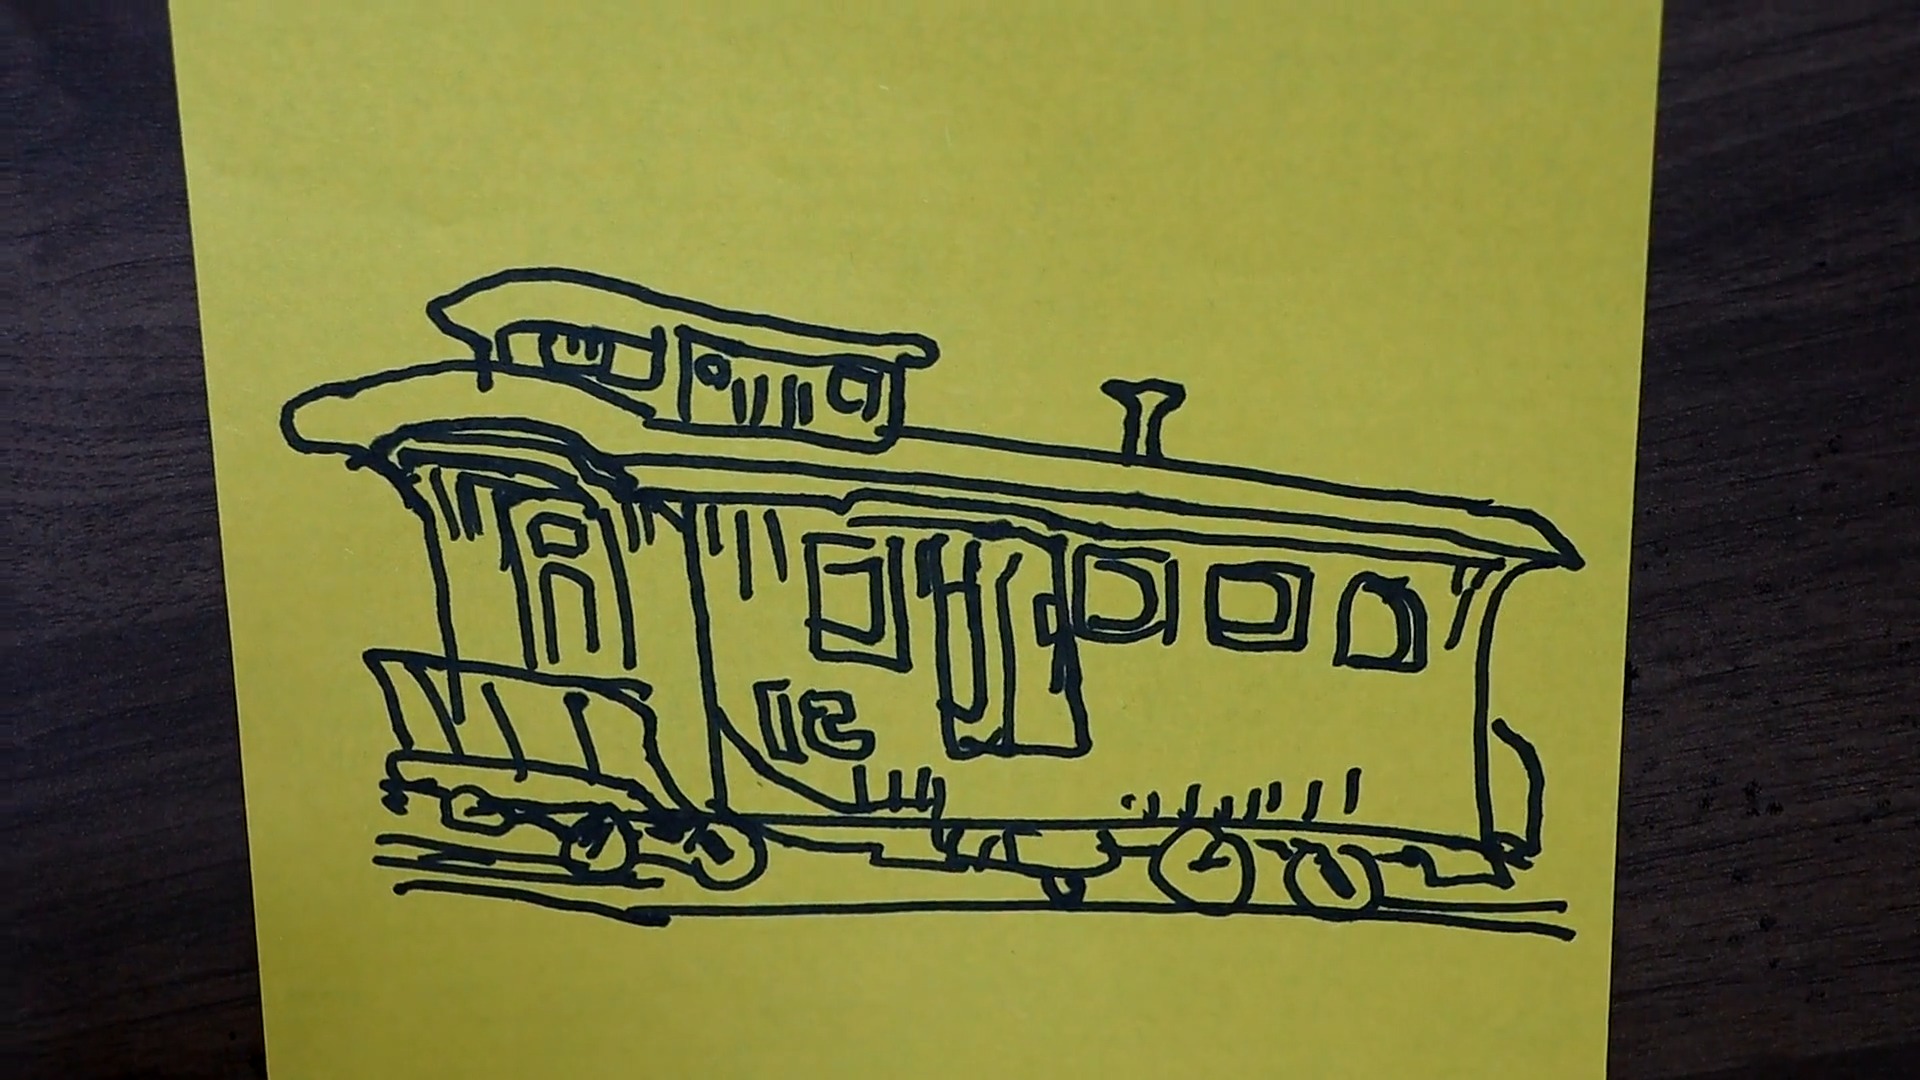 火车车厢简笔画 简单图片